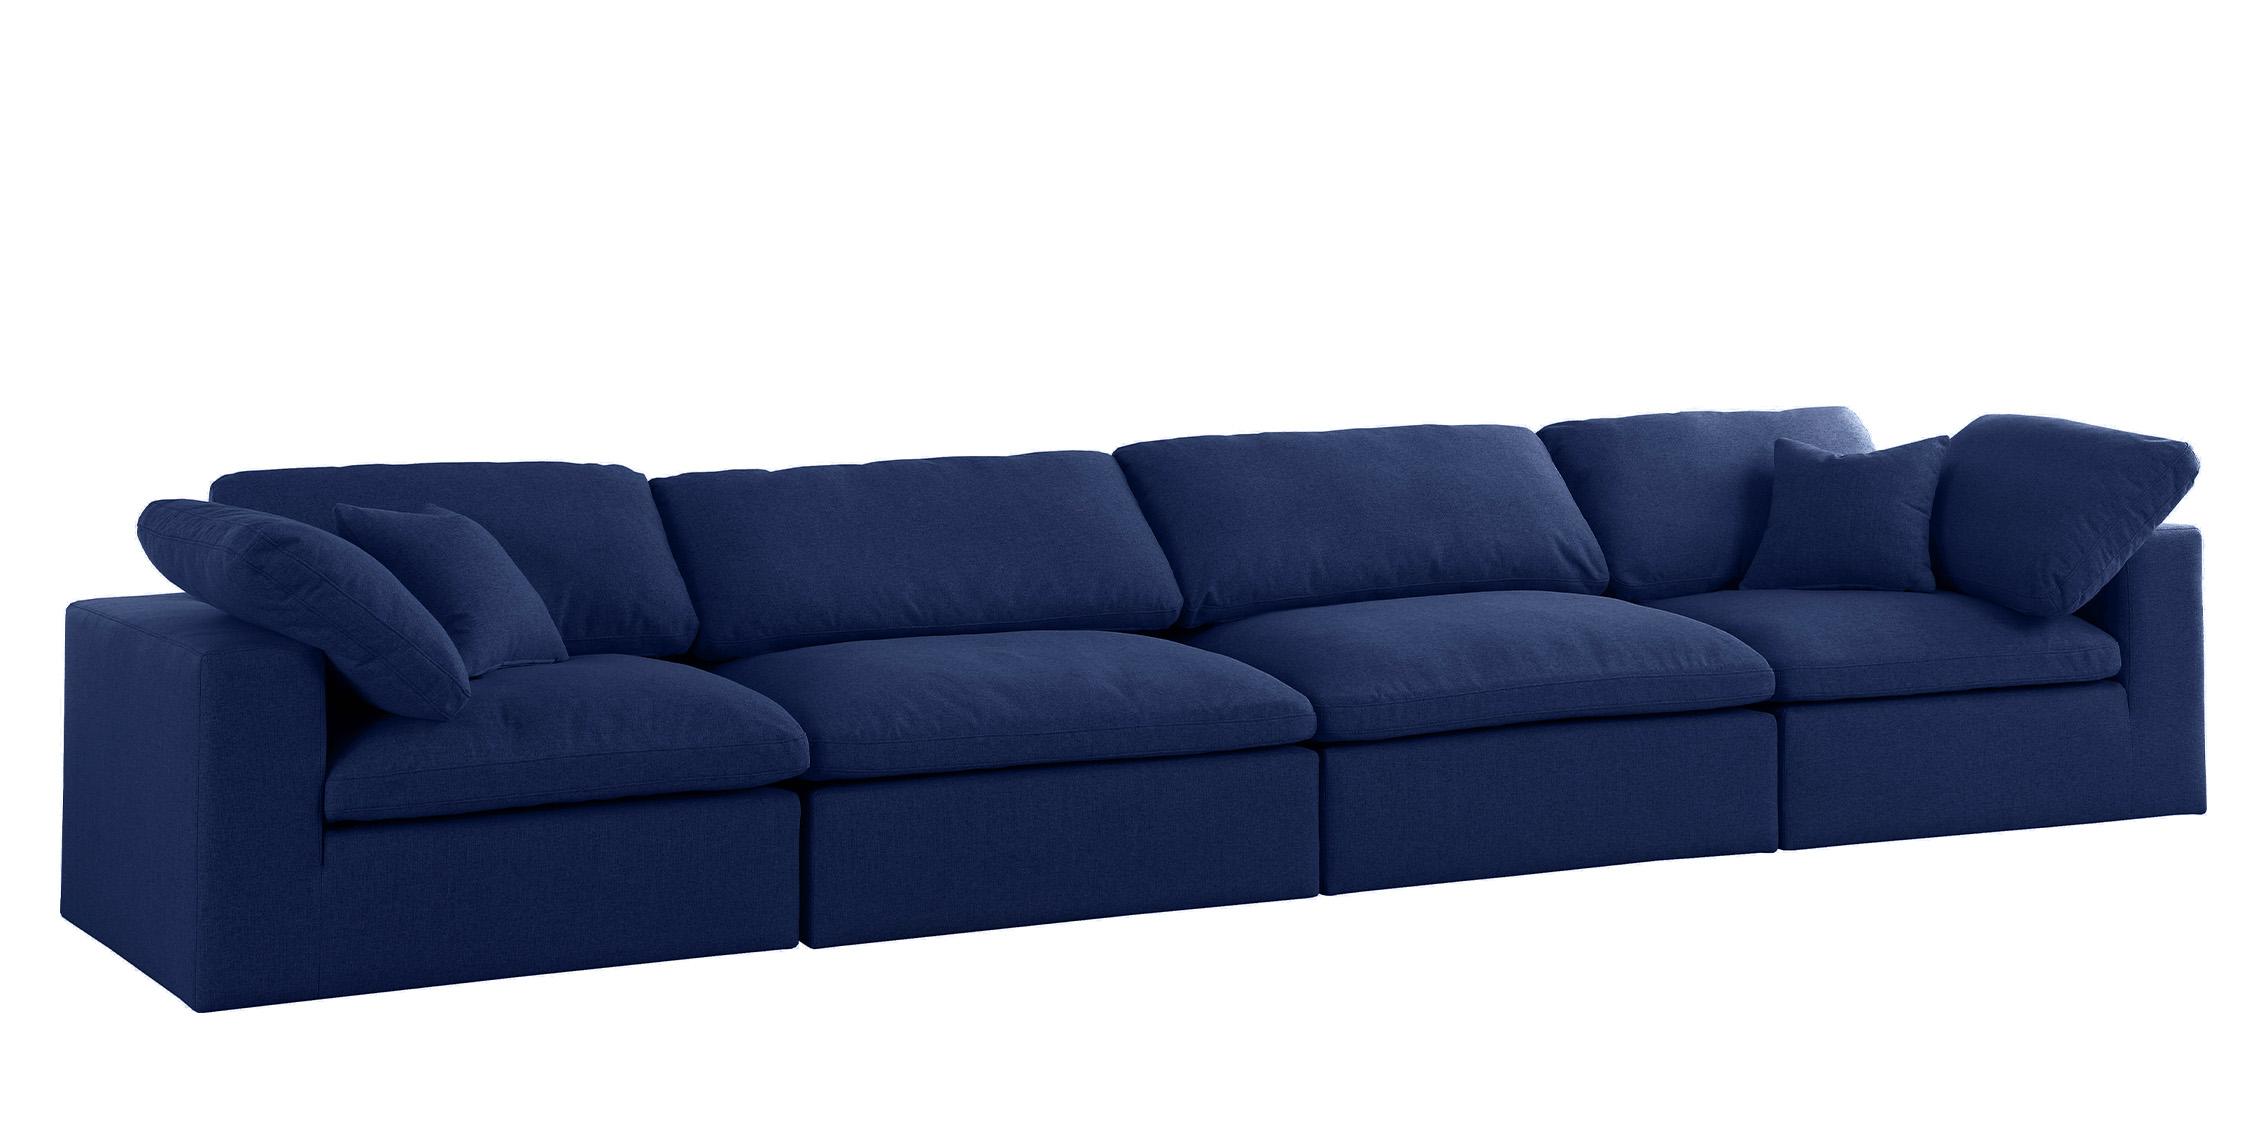 

    
Serene Navy Linen Textured Fabric Deluxe Comfort Modular Sofa S158 Meridian
